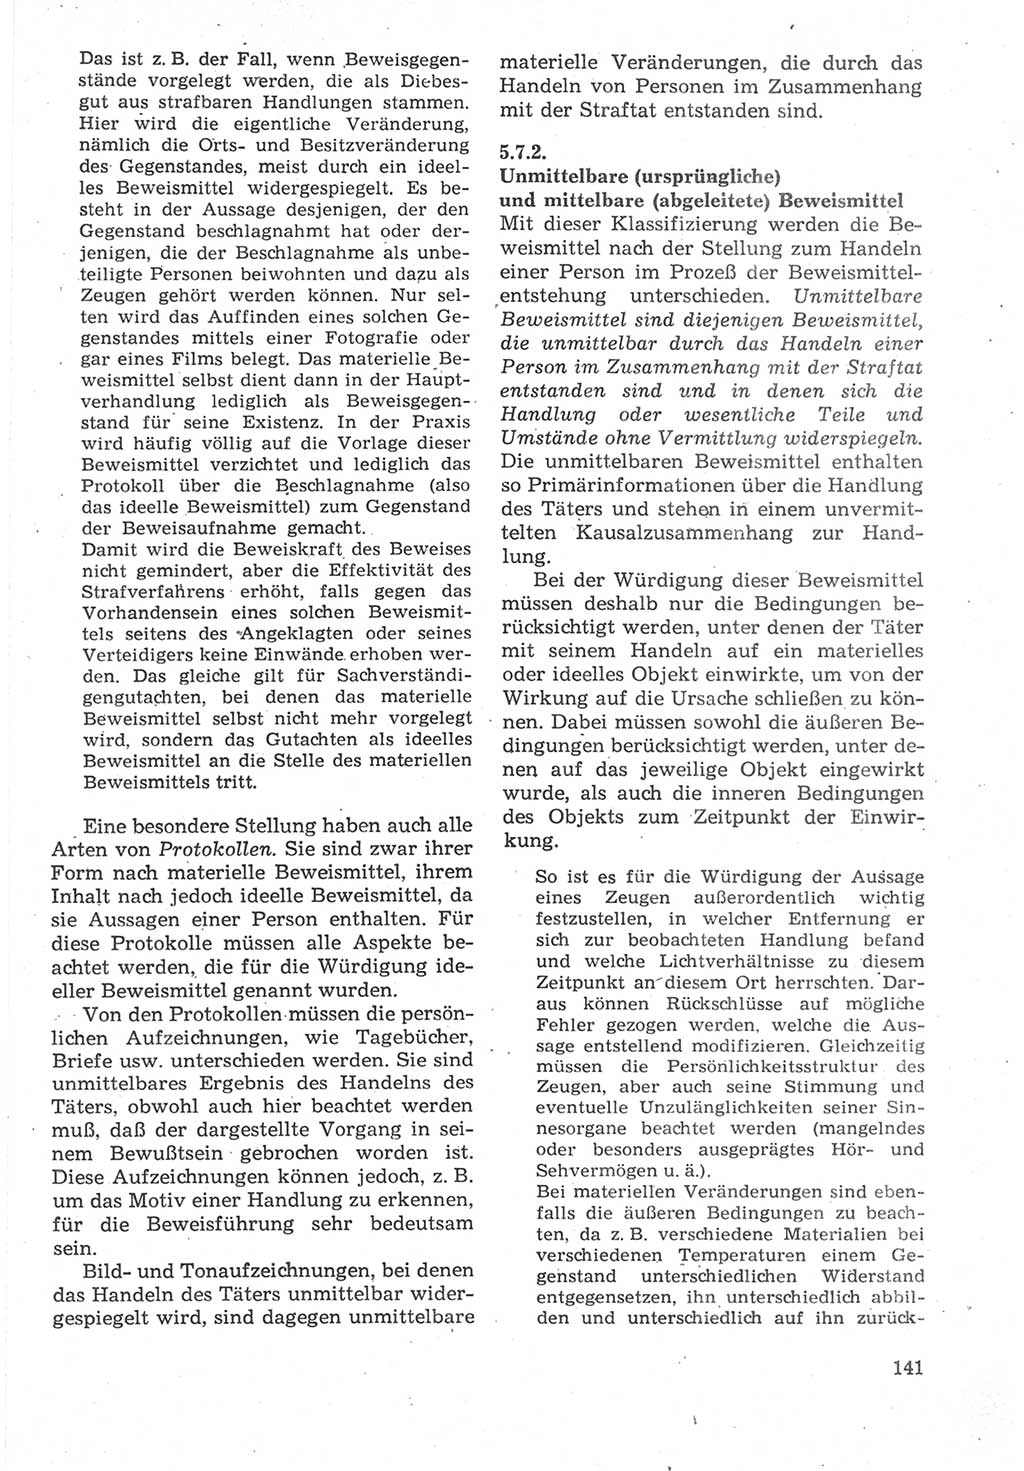 Strafverfahrensrecht [Deutsche Demokratische Republik (DDR)], Lehrbuch 1987, Seite 141 (Strafverf.-R. DDR Lb. 1987, S. 141)